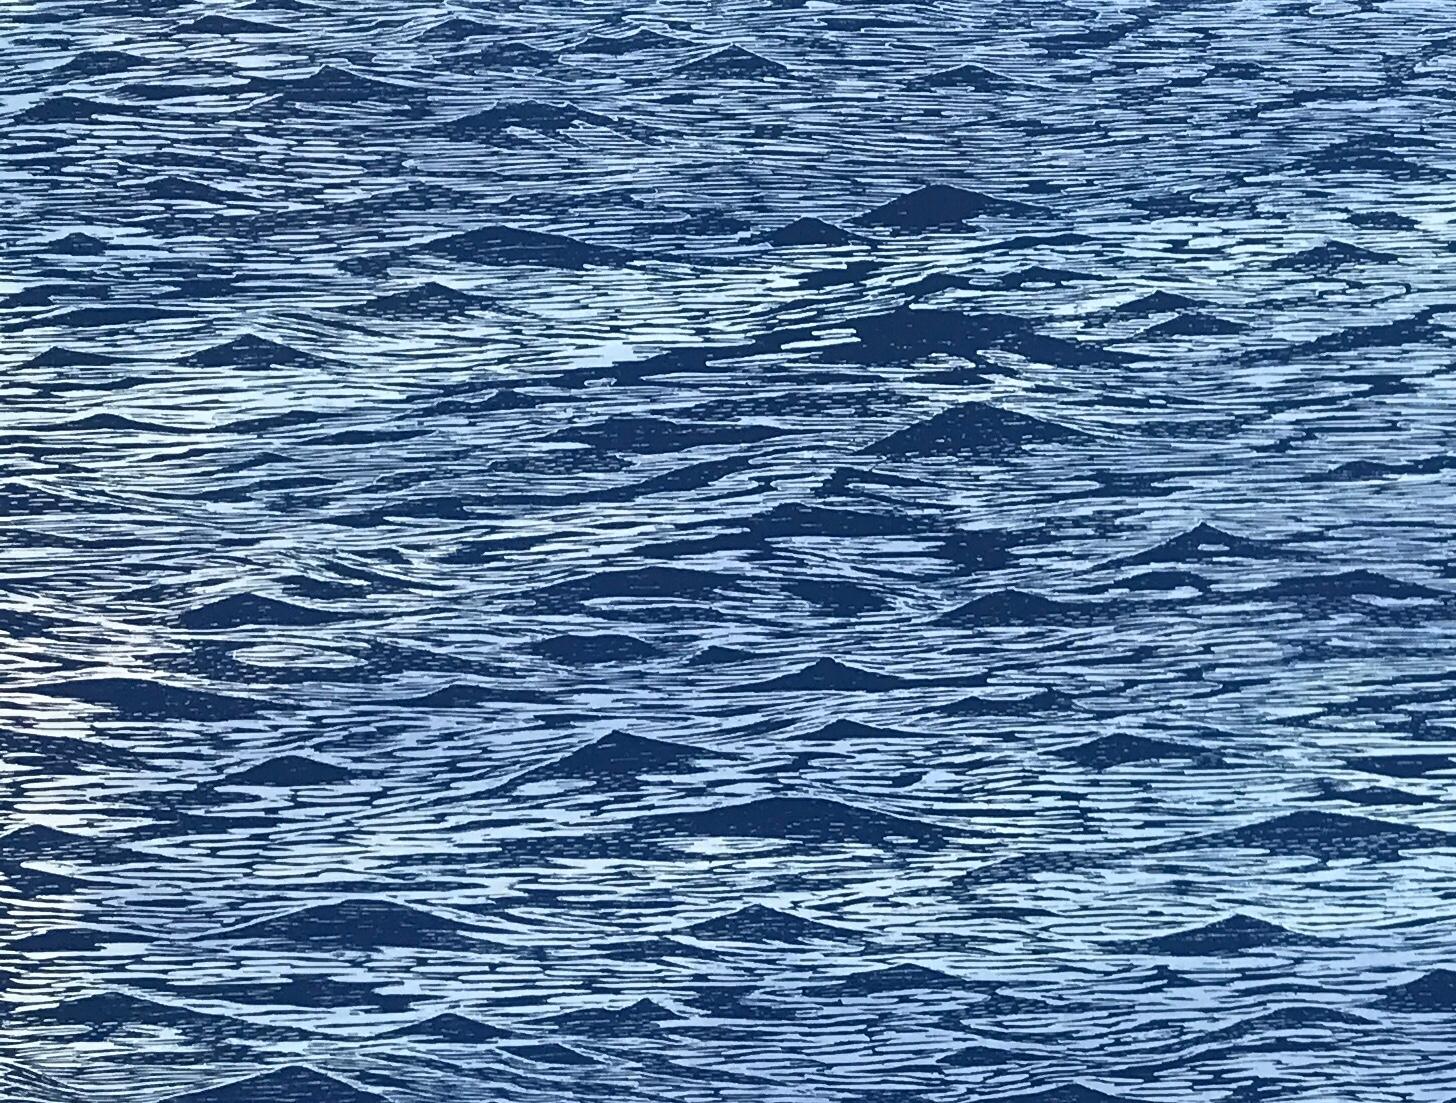 Diptyque de paysage marin 23, grande gravure horizontale sur bois bleue représentant de l'eau et des vagues océaniques - Contemporain Print par Eve Stockton